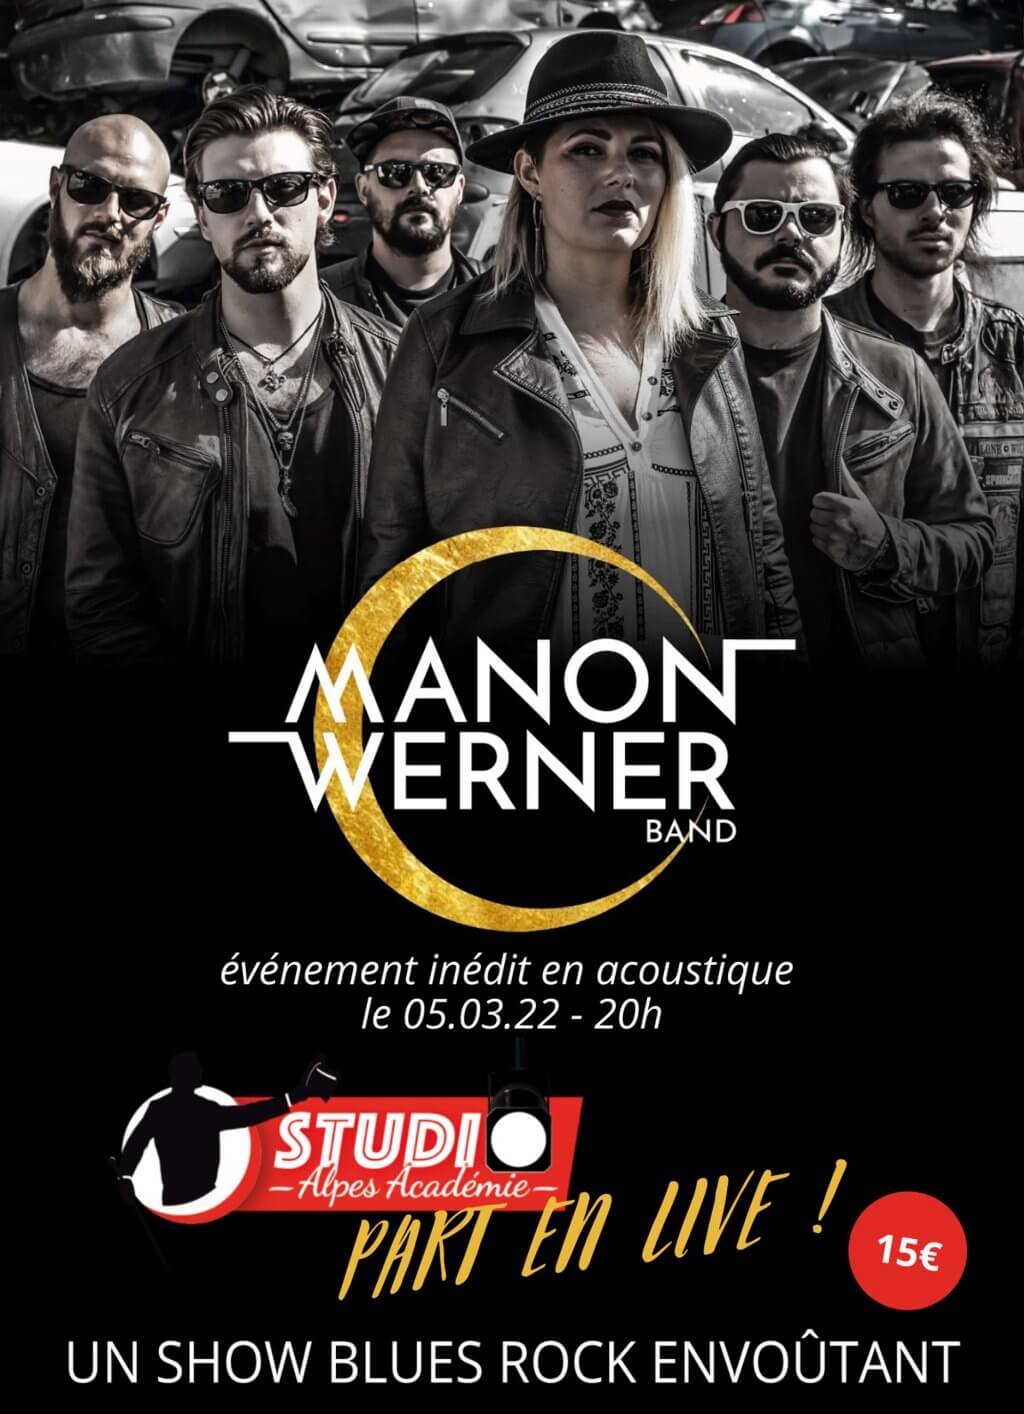 Manon Werner Band en acoustique au Studio Alpes Académie